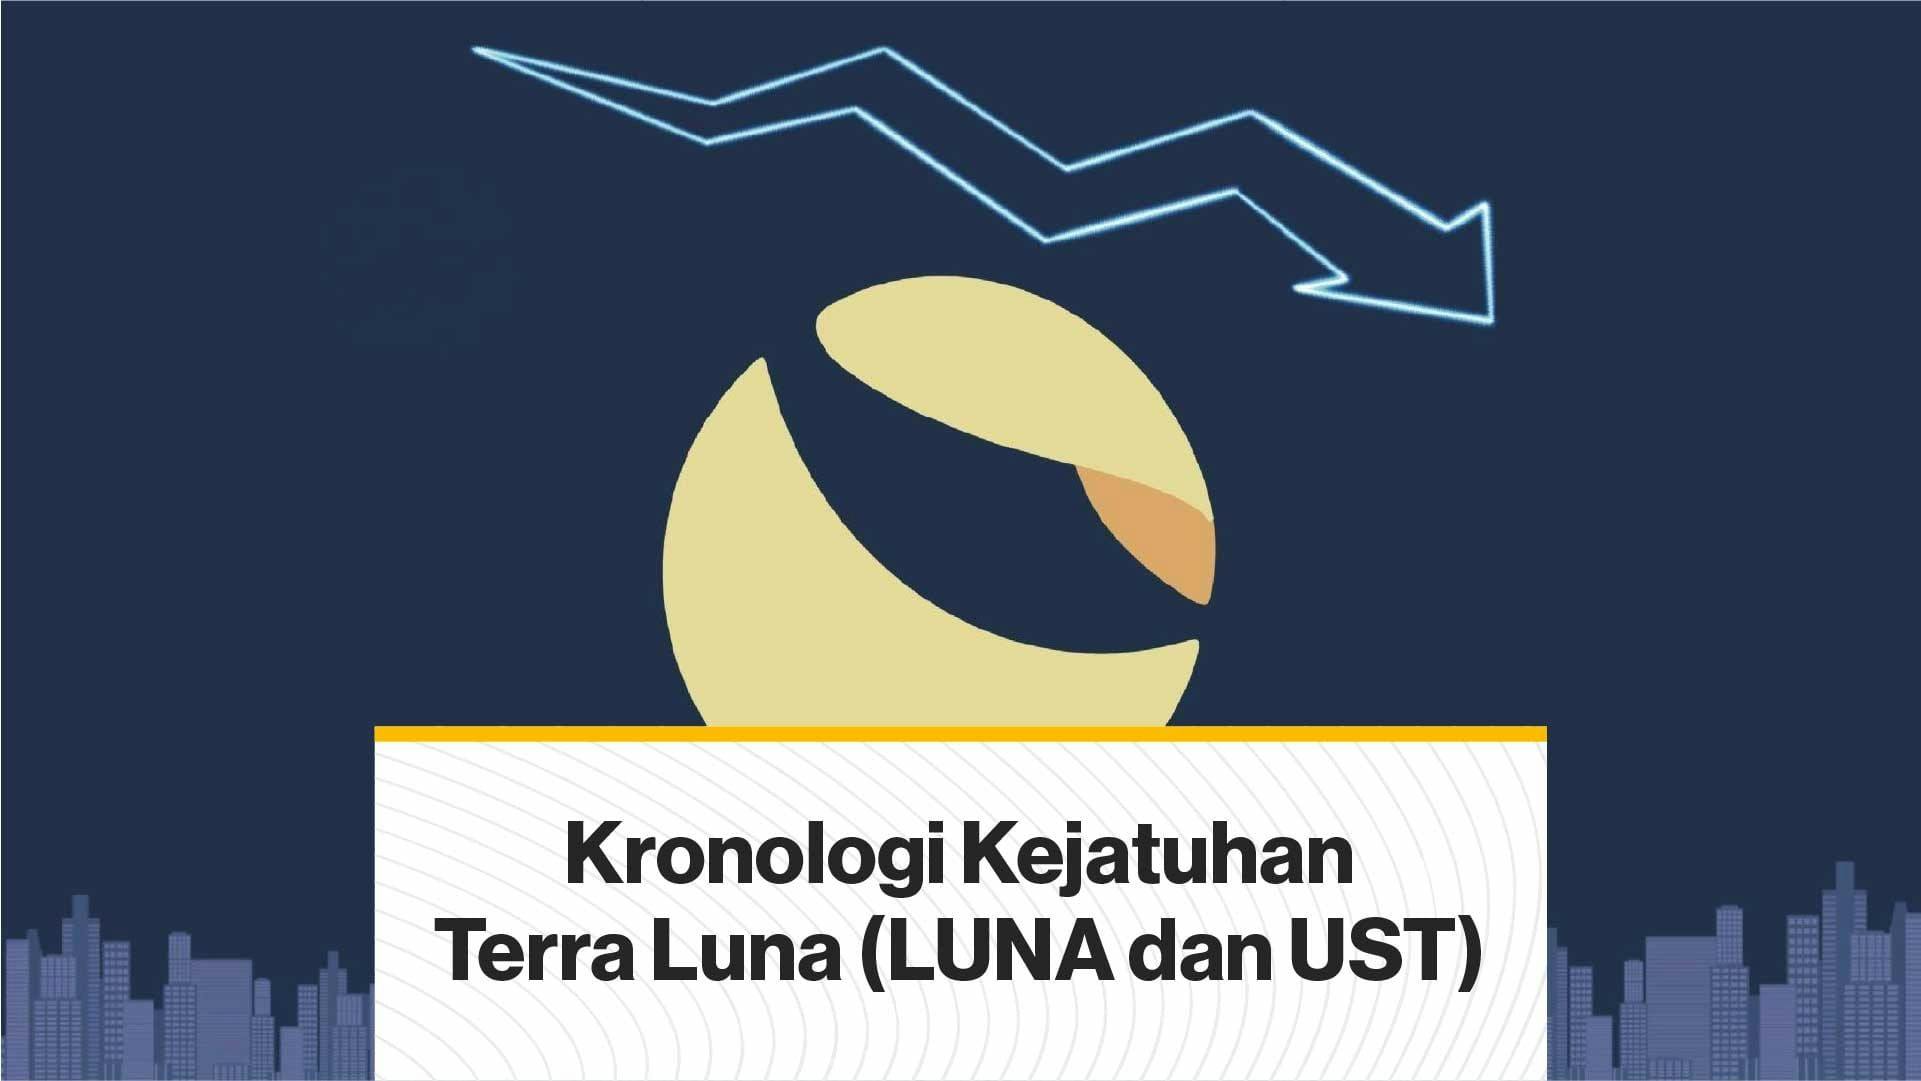 Kronologi Kejatuhan Terra Luna (LUNA dan UST) (Coindesk Indonesia)